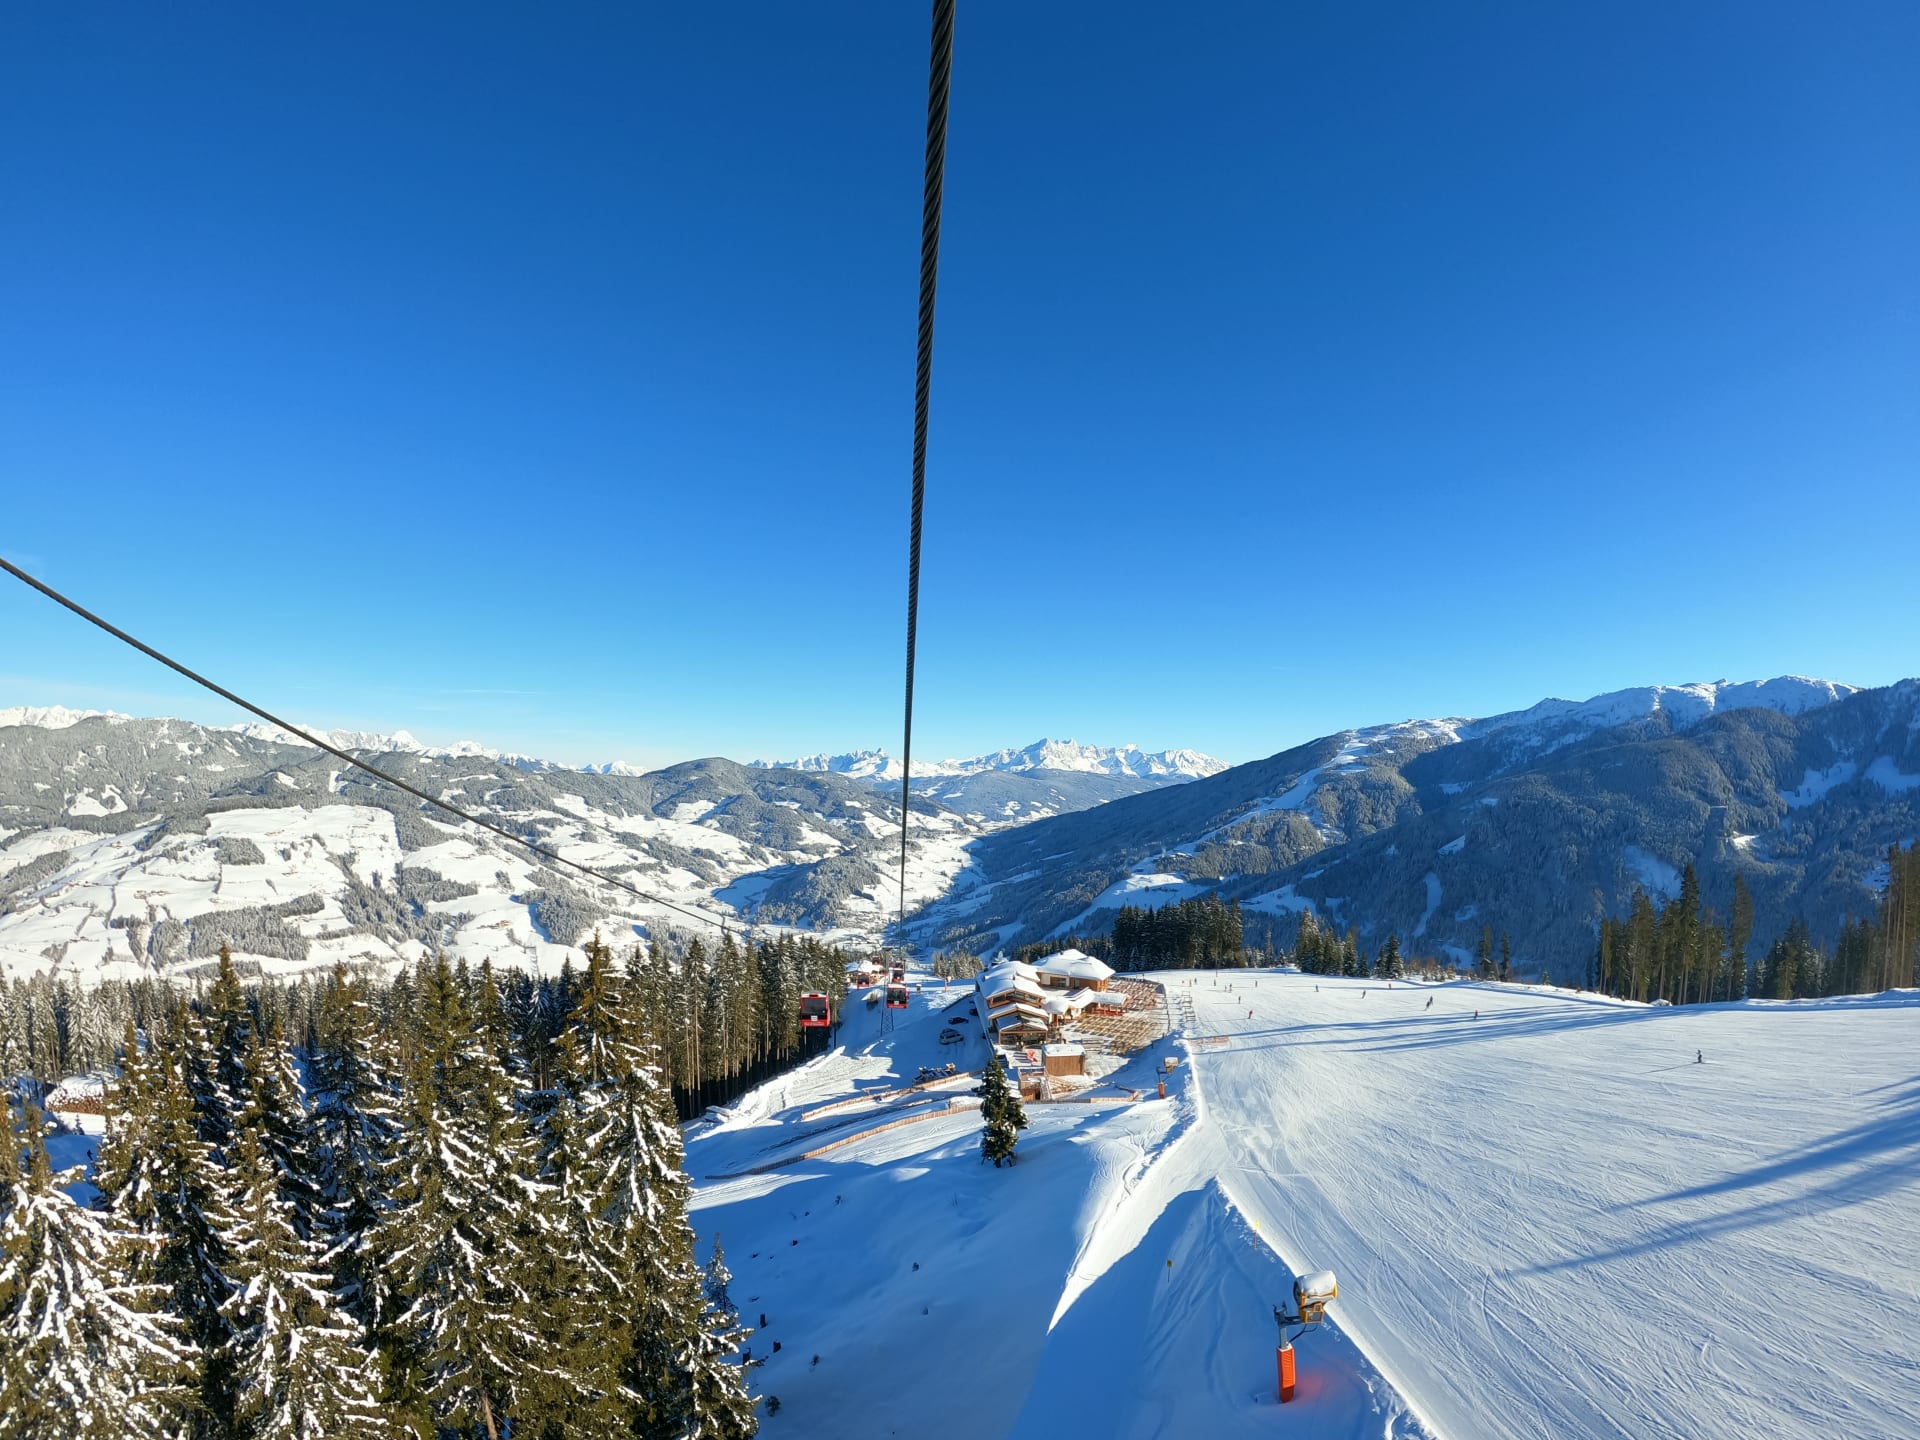 Nové lanovkové spojení Panorama Link propojilo oblast Snow Space Salzburg se sousedními areály Flachauwinkl a Zauchensee.